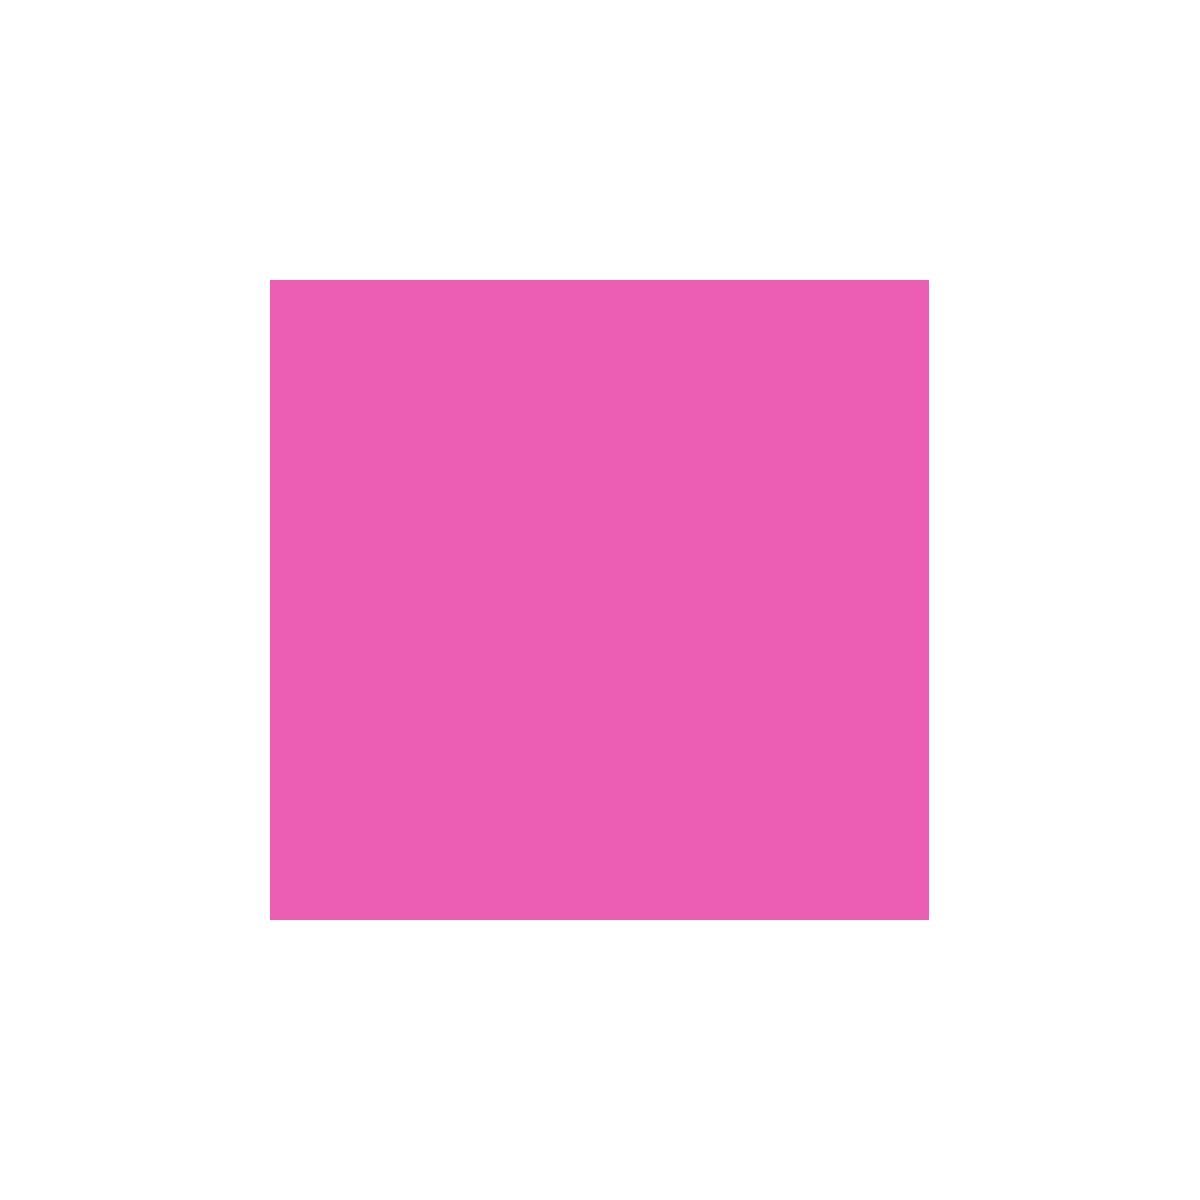 AS4HOME Möbelfolie Möbelfolie uni pink rosa neon 45 x 150 cm, Muster: Uni